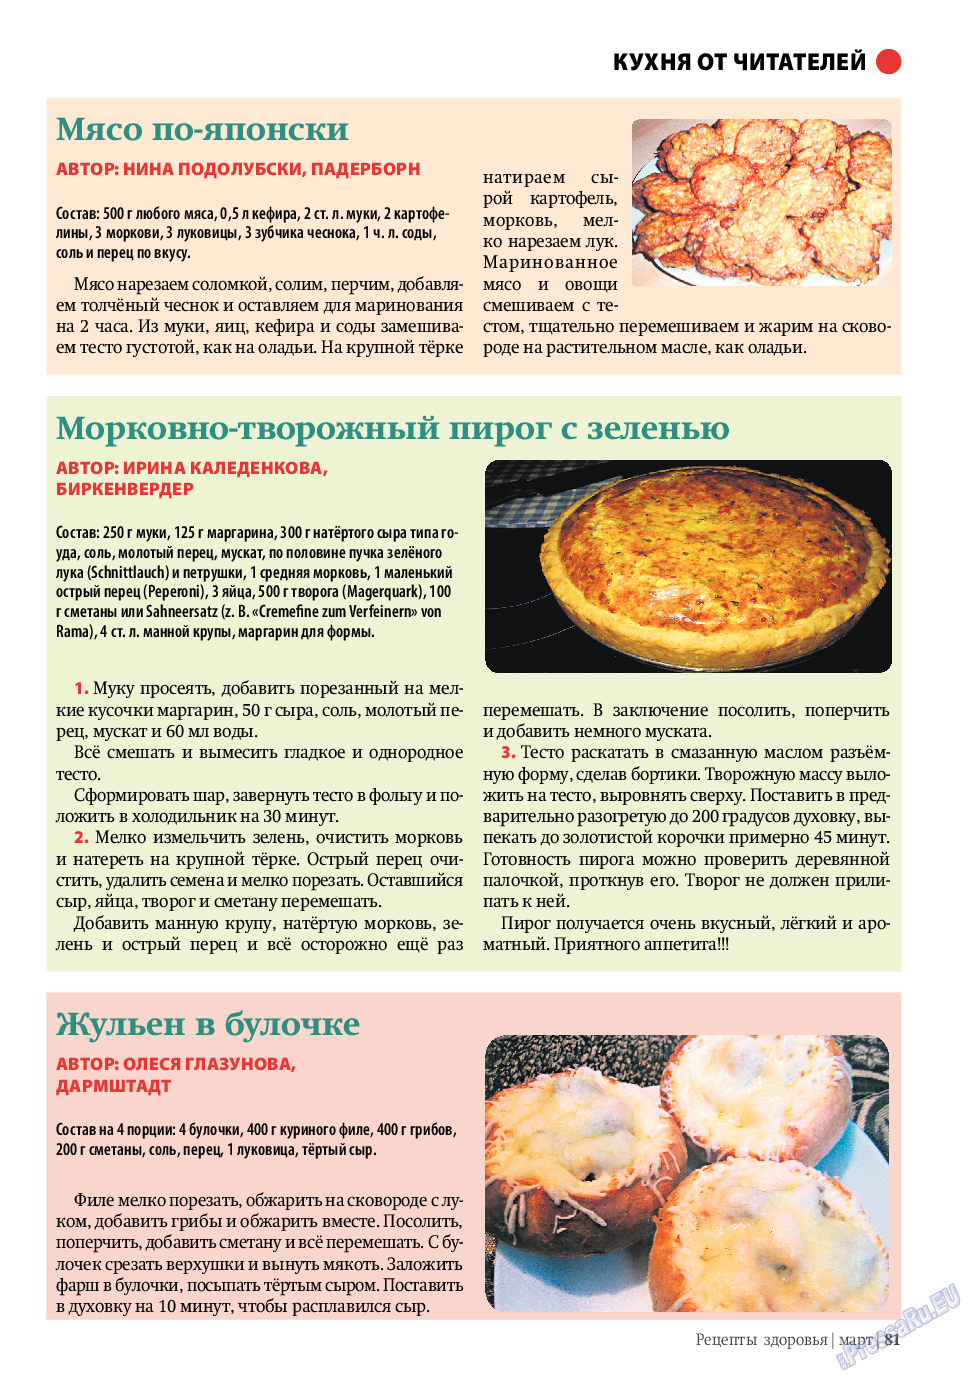 Рецепты здоровья, журнал. 2010 №3 стр.81